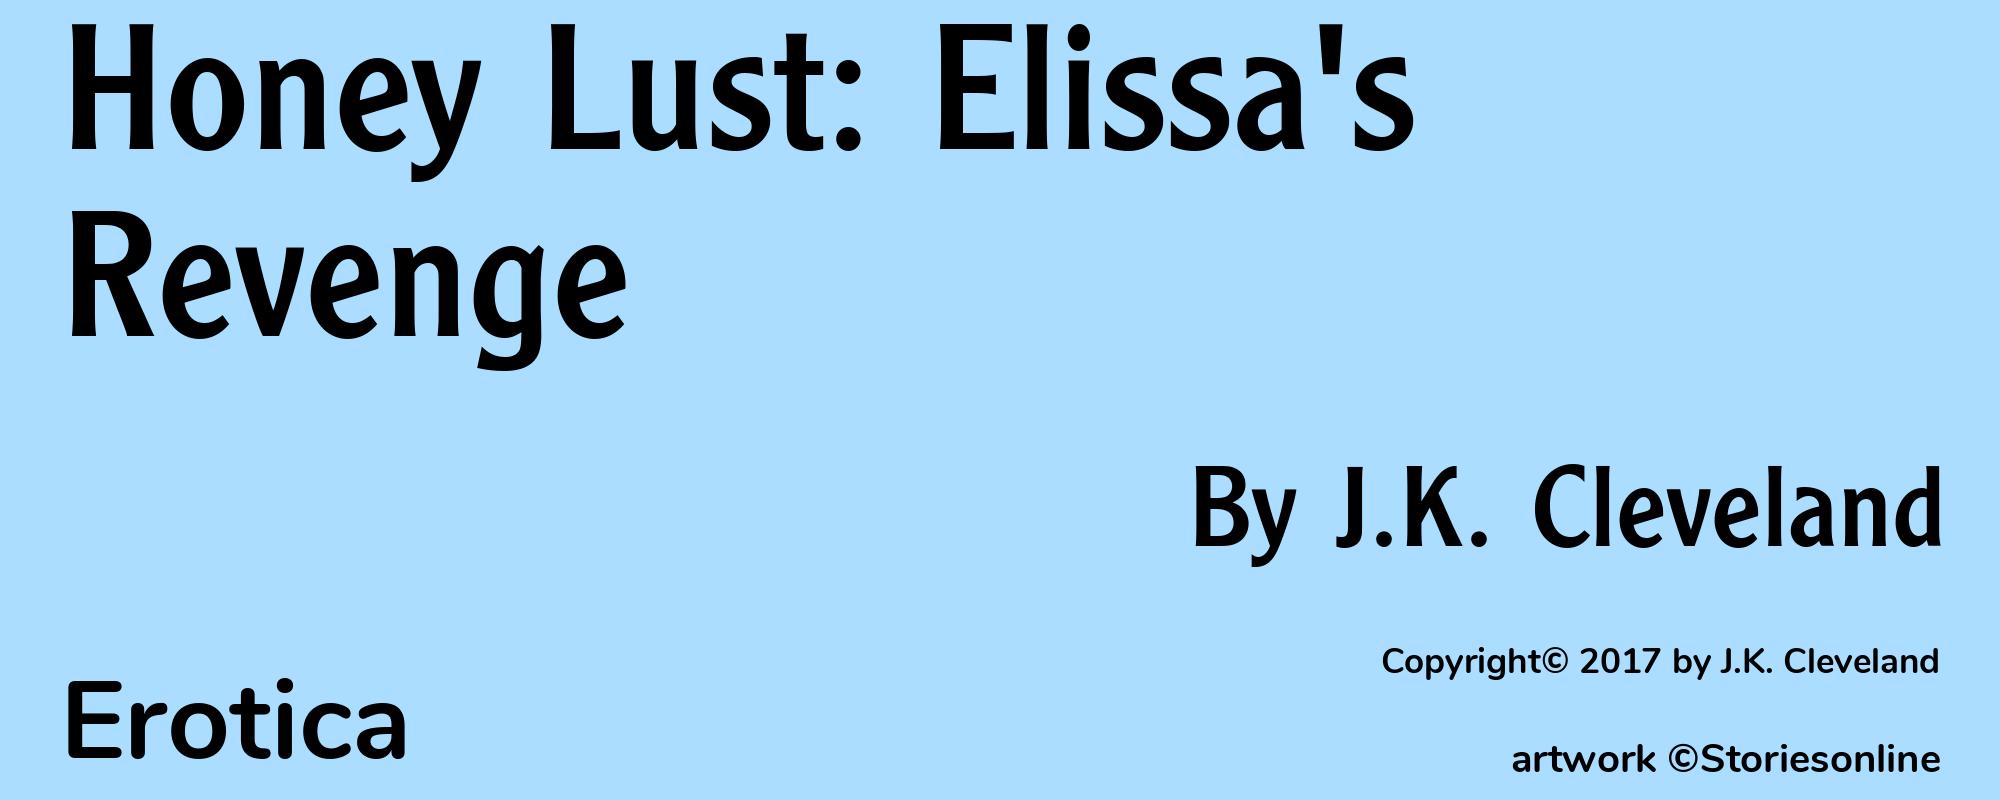 Honey Lust: Elissa's Revenge - Cover